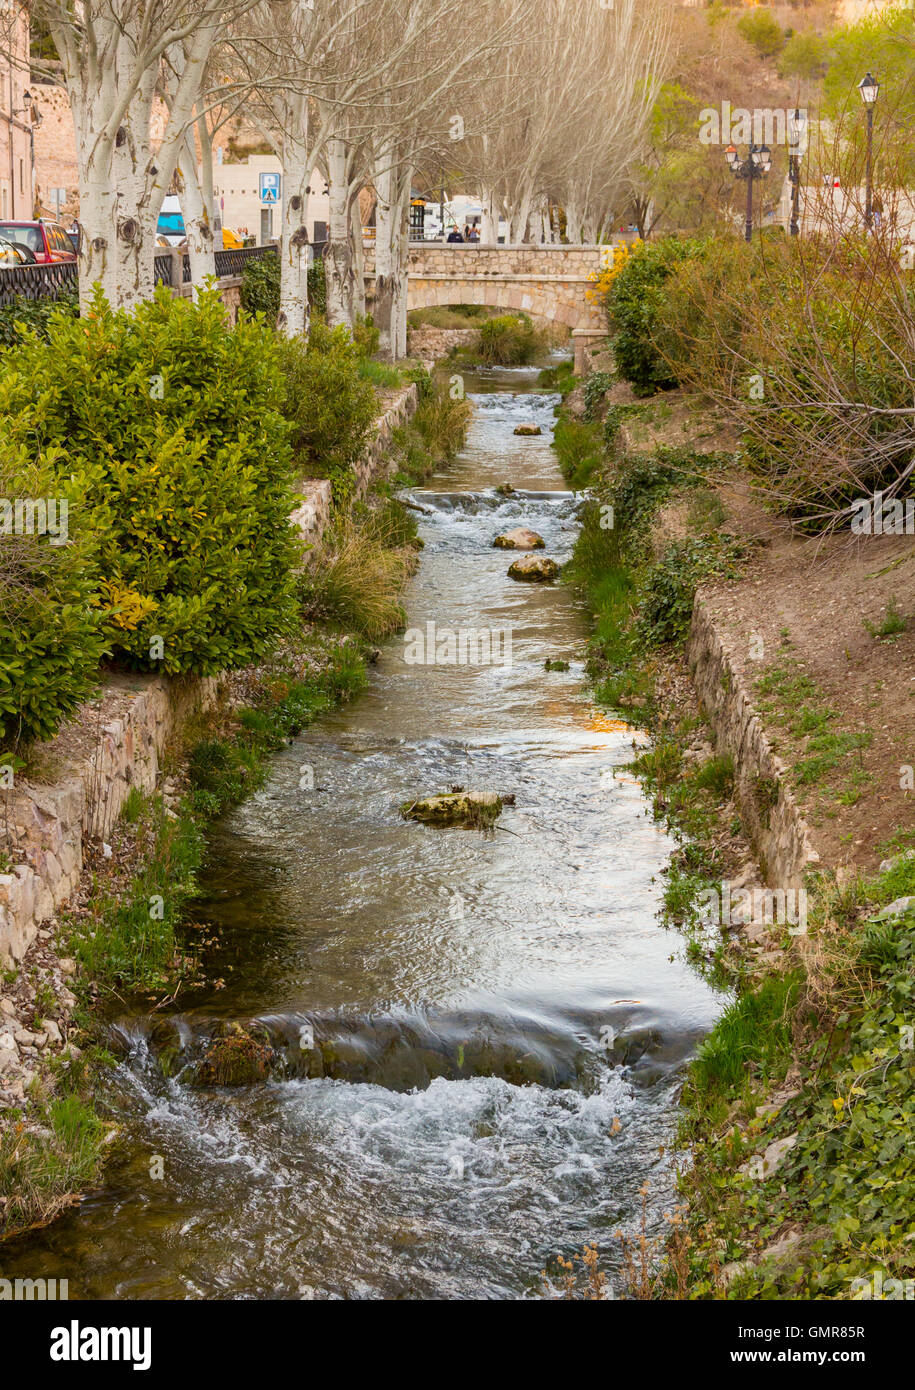 Canal de agua pequeña cruza la ciudad de Cuenca, España Foto de stock